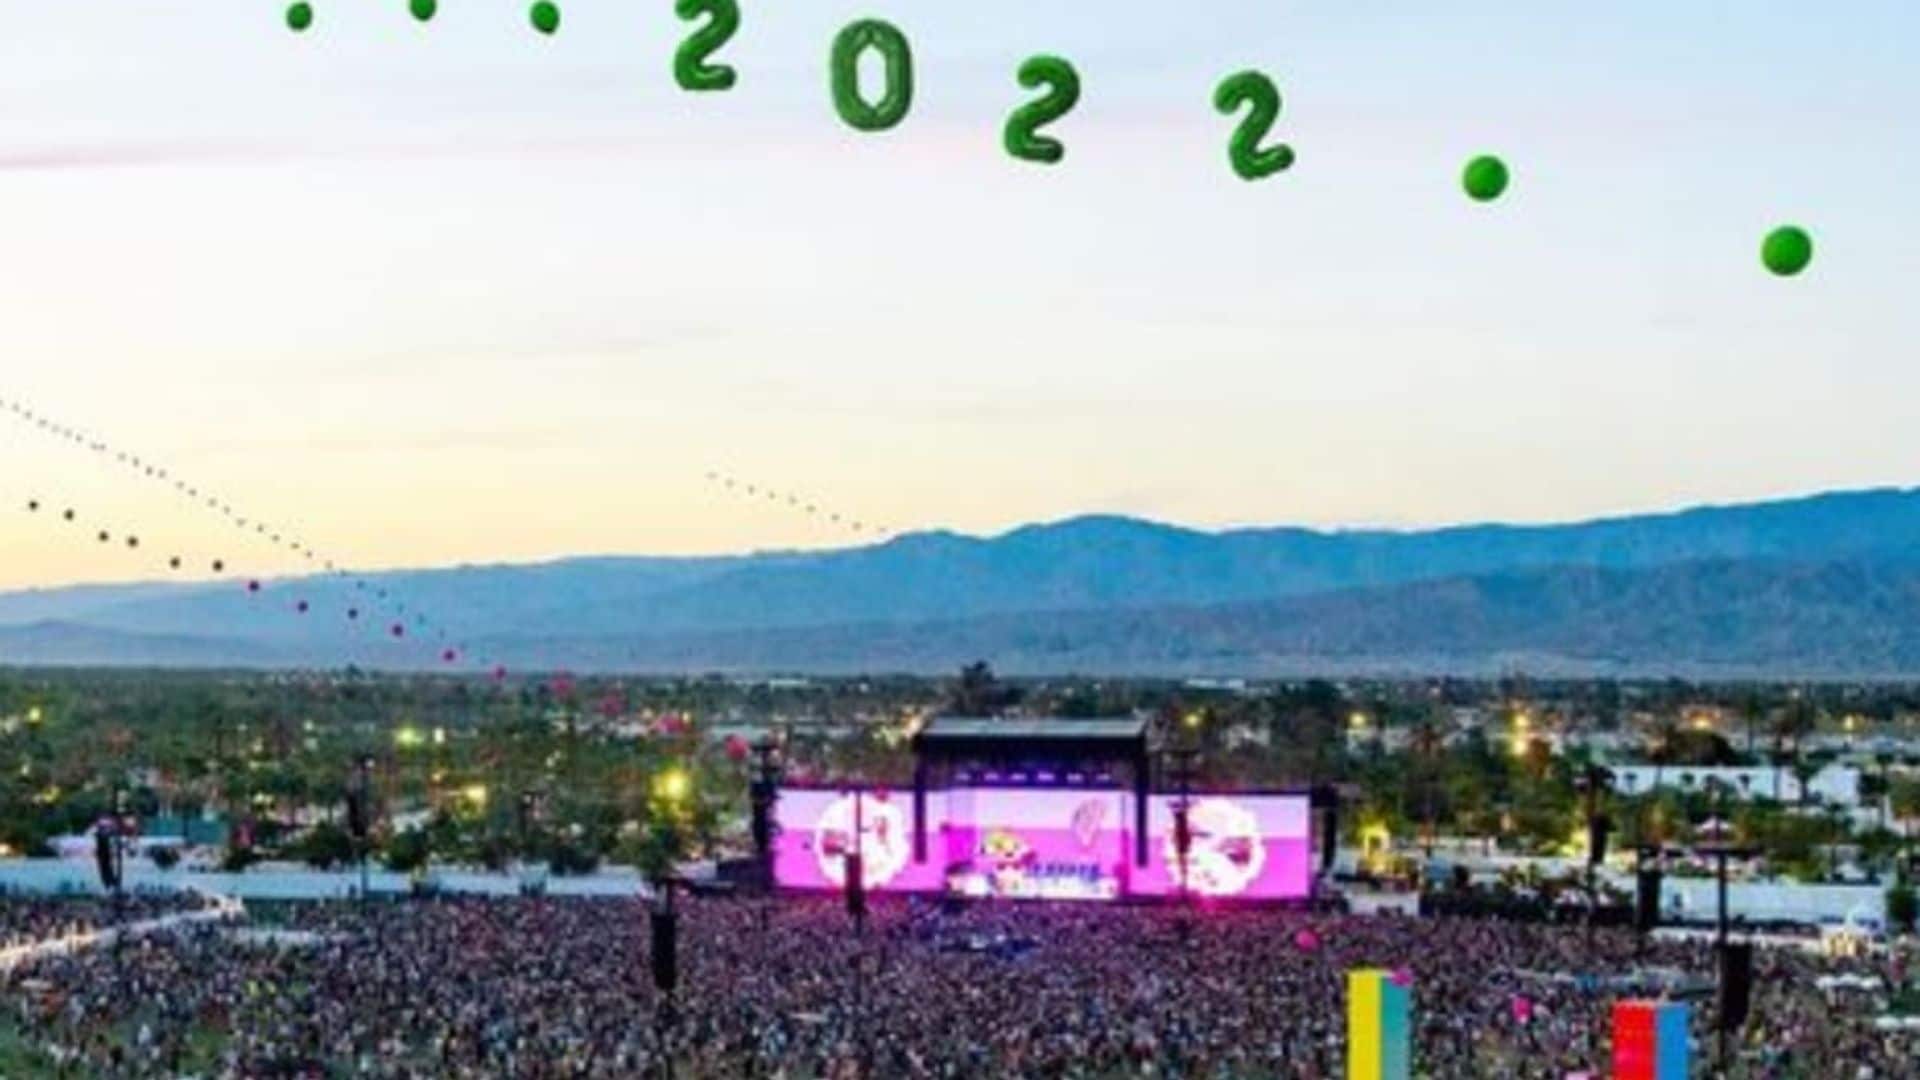 Kanye West, Billie Eilish and Harry Styles are headlining Coachella